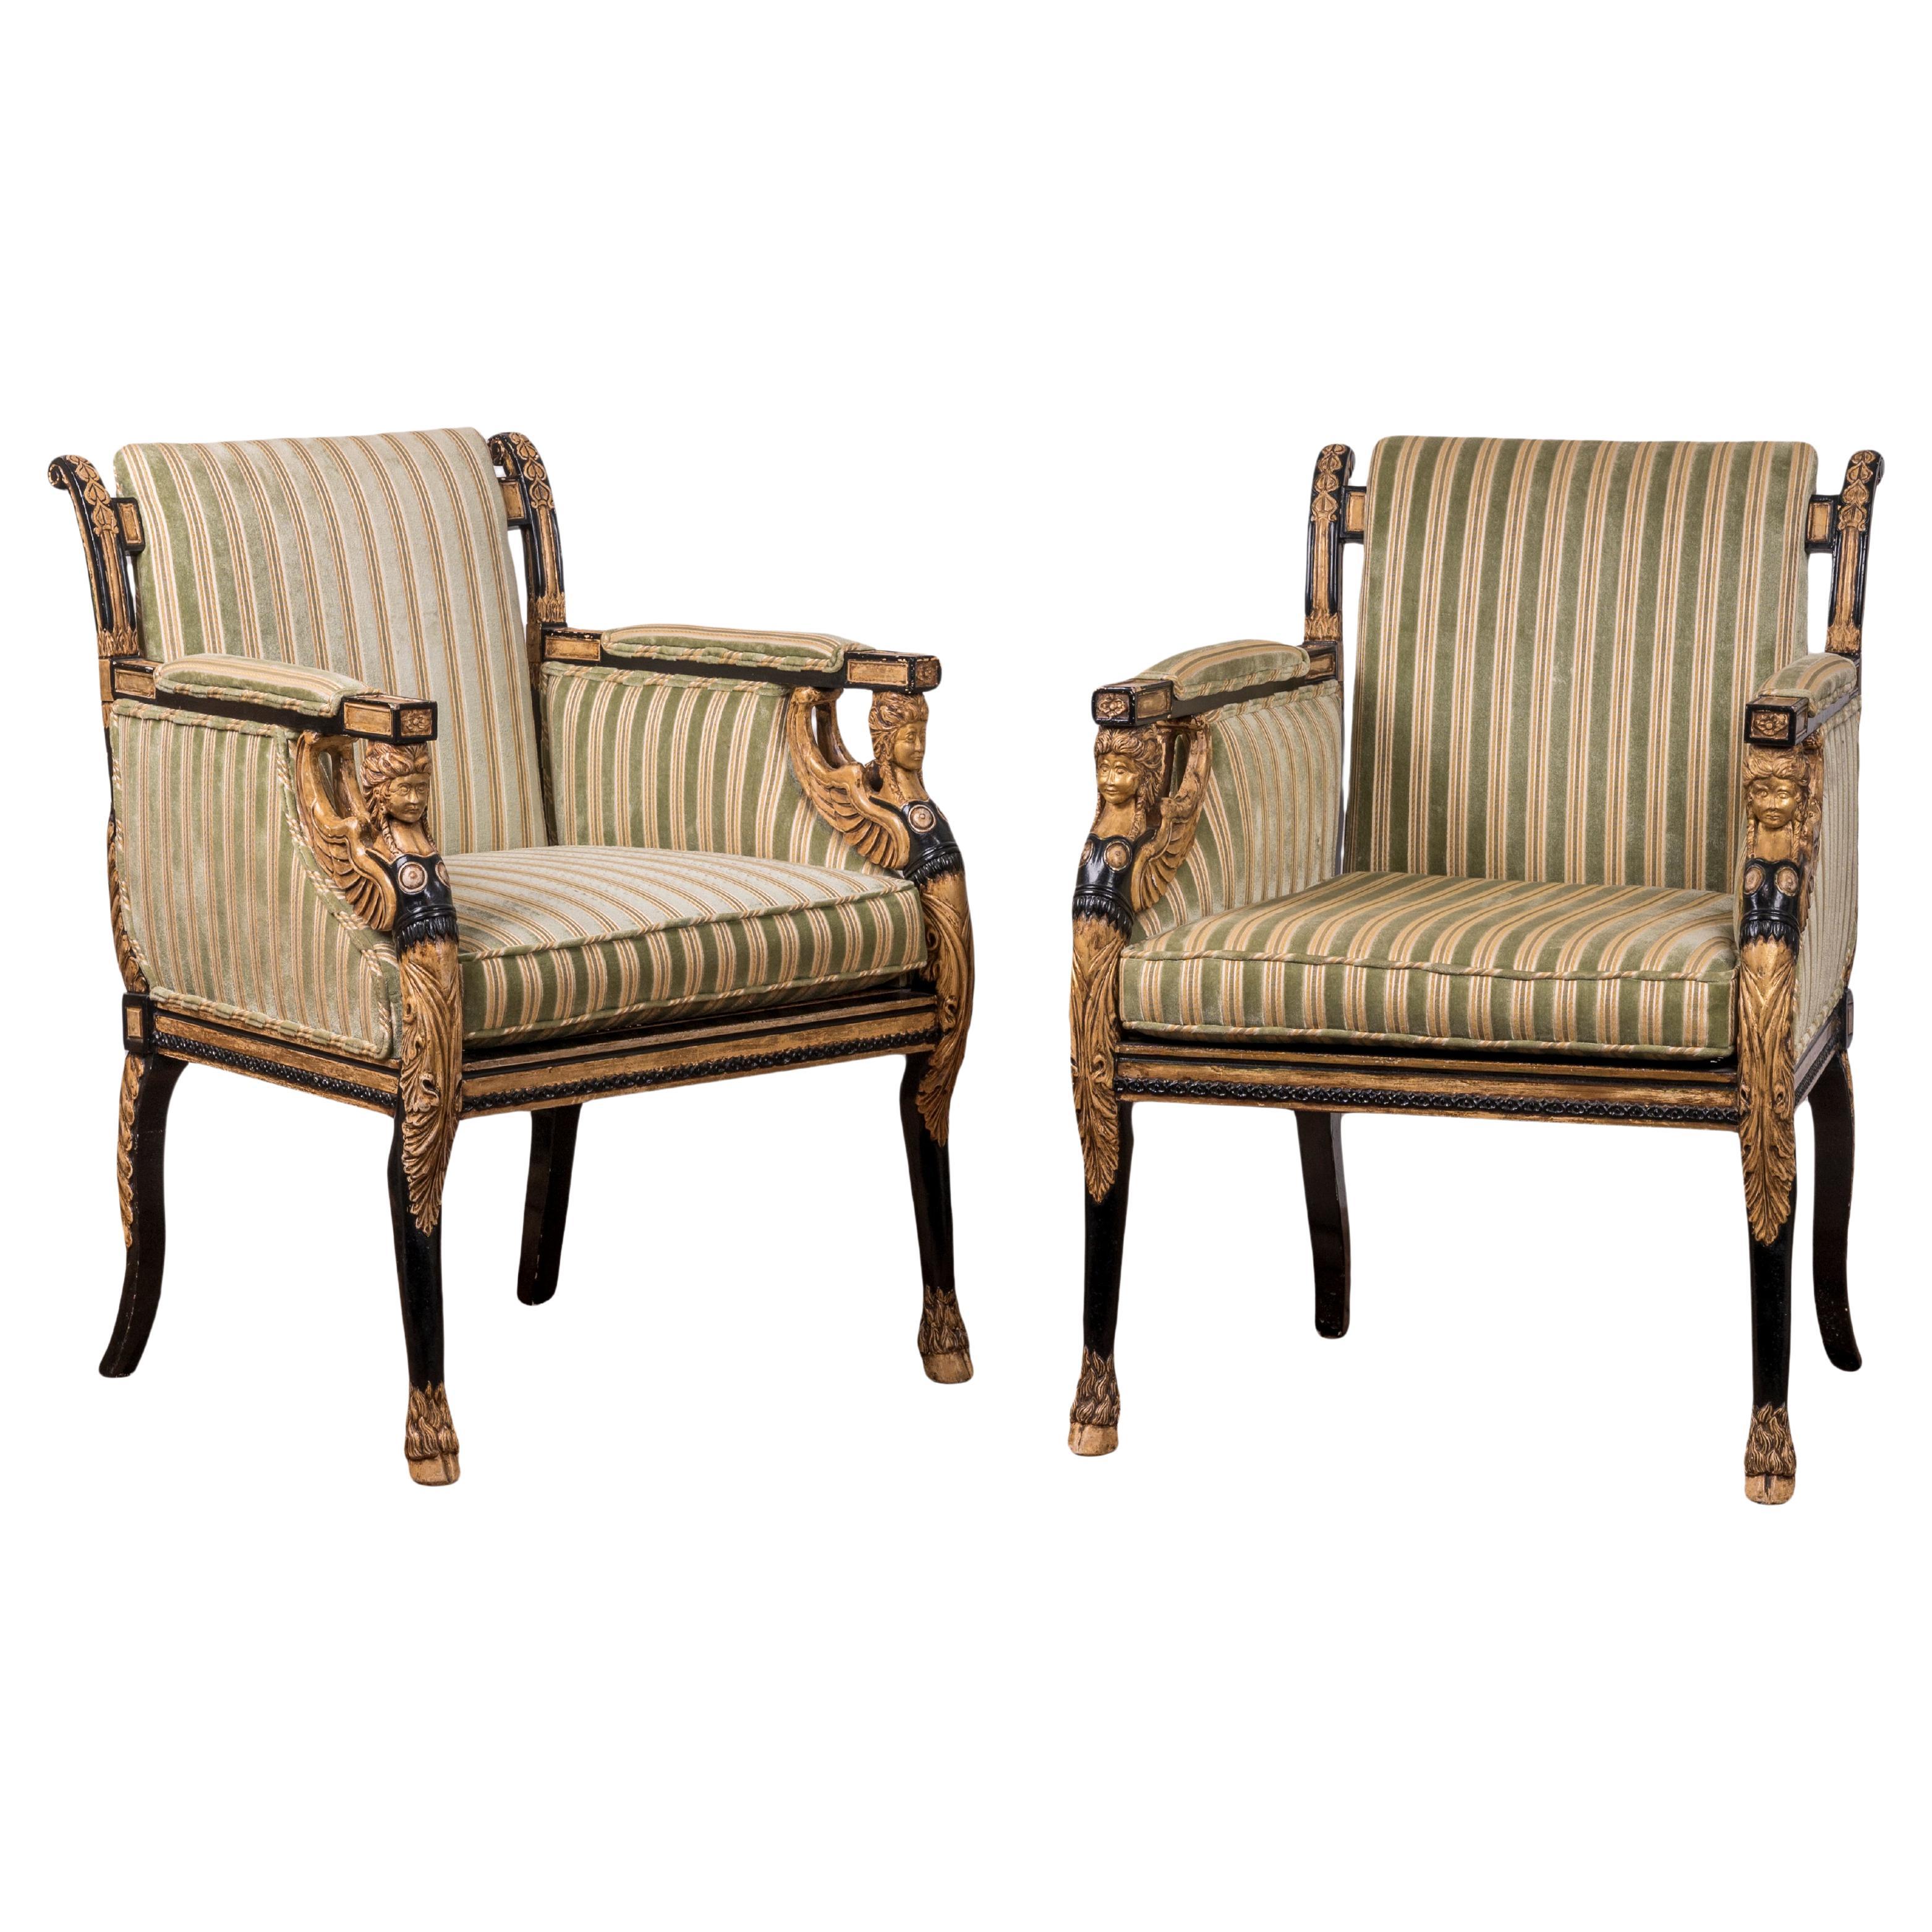 Englische ebonisierte und teilweise vergoldete Stühle im Regency-Stil - Ein Paar